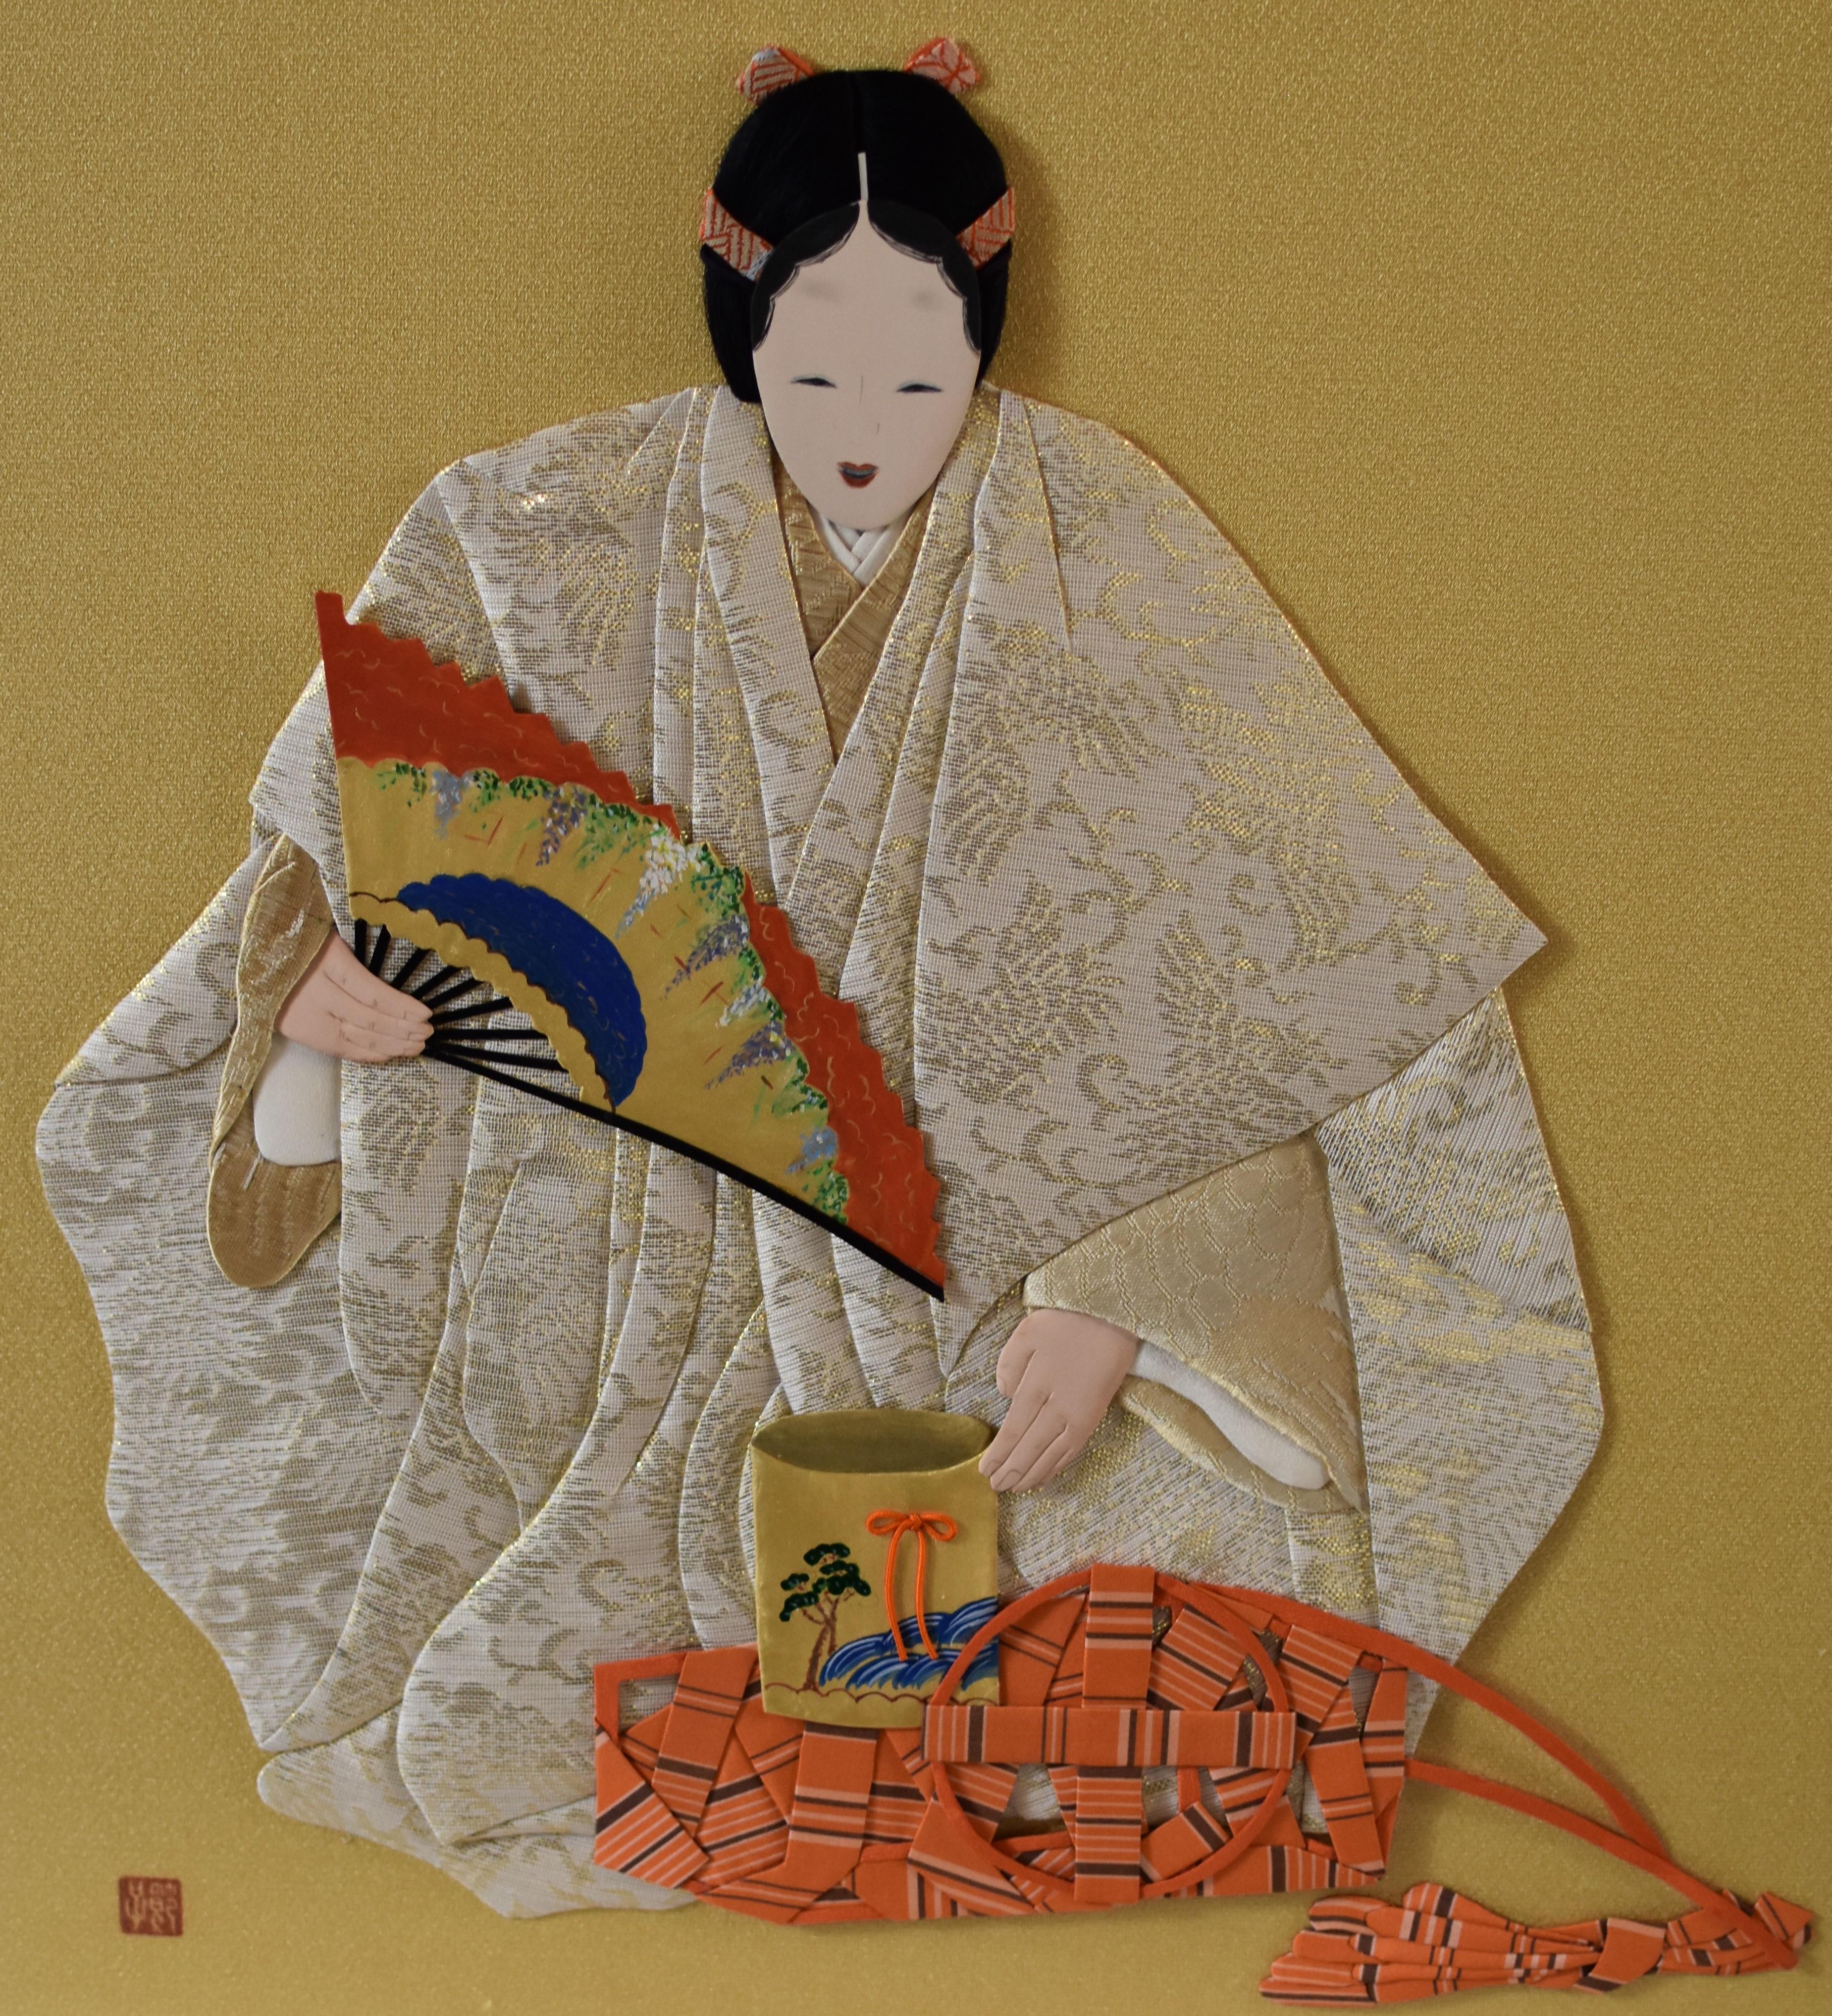 Forme d'art artisanale contemporaine et décorative japonaise unique, encadrée et traditionnelle, connue sous le nom d'oshie (littéralement, 